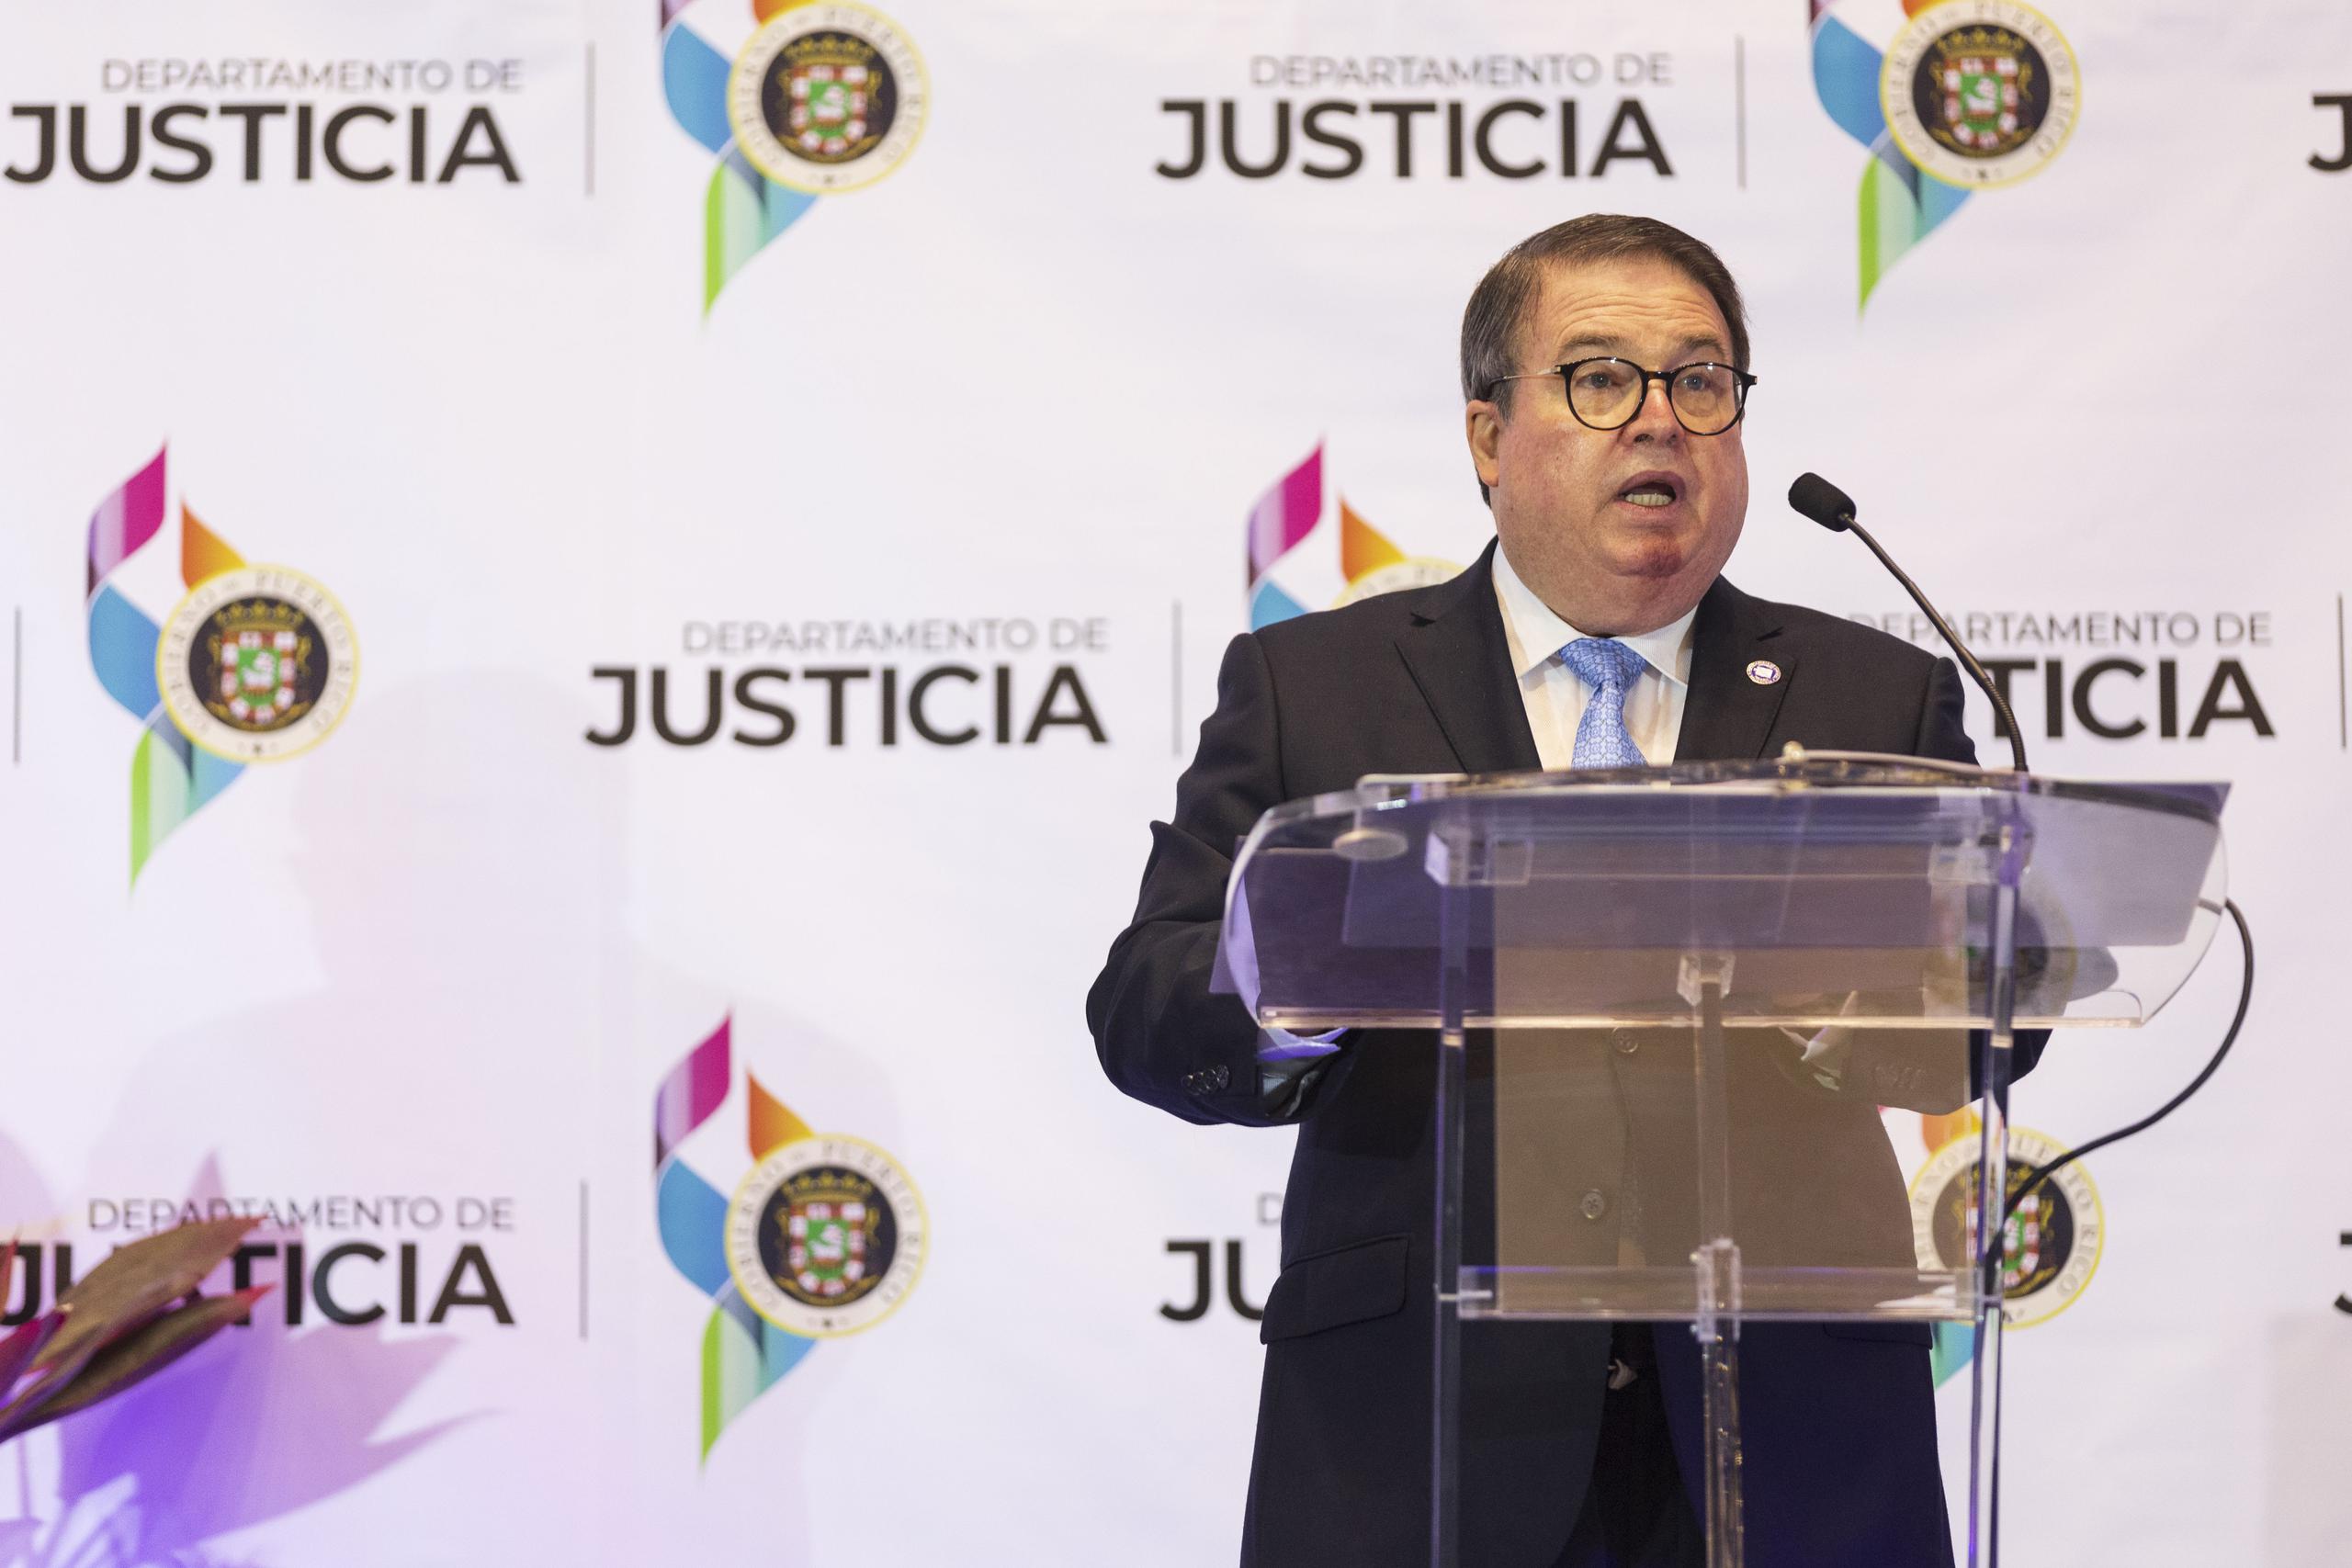 "El Departamento de Justicia reconoce que el Artículo 86 de la Ley 52-2022 adolece de los defectos constitucionales que se alegan en la demanda”, expresó en una moción el secretario de Justicia, Domingo Emanuelli Hernández.